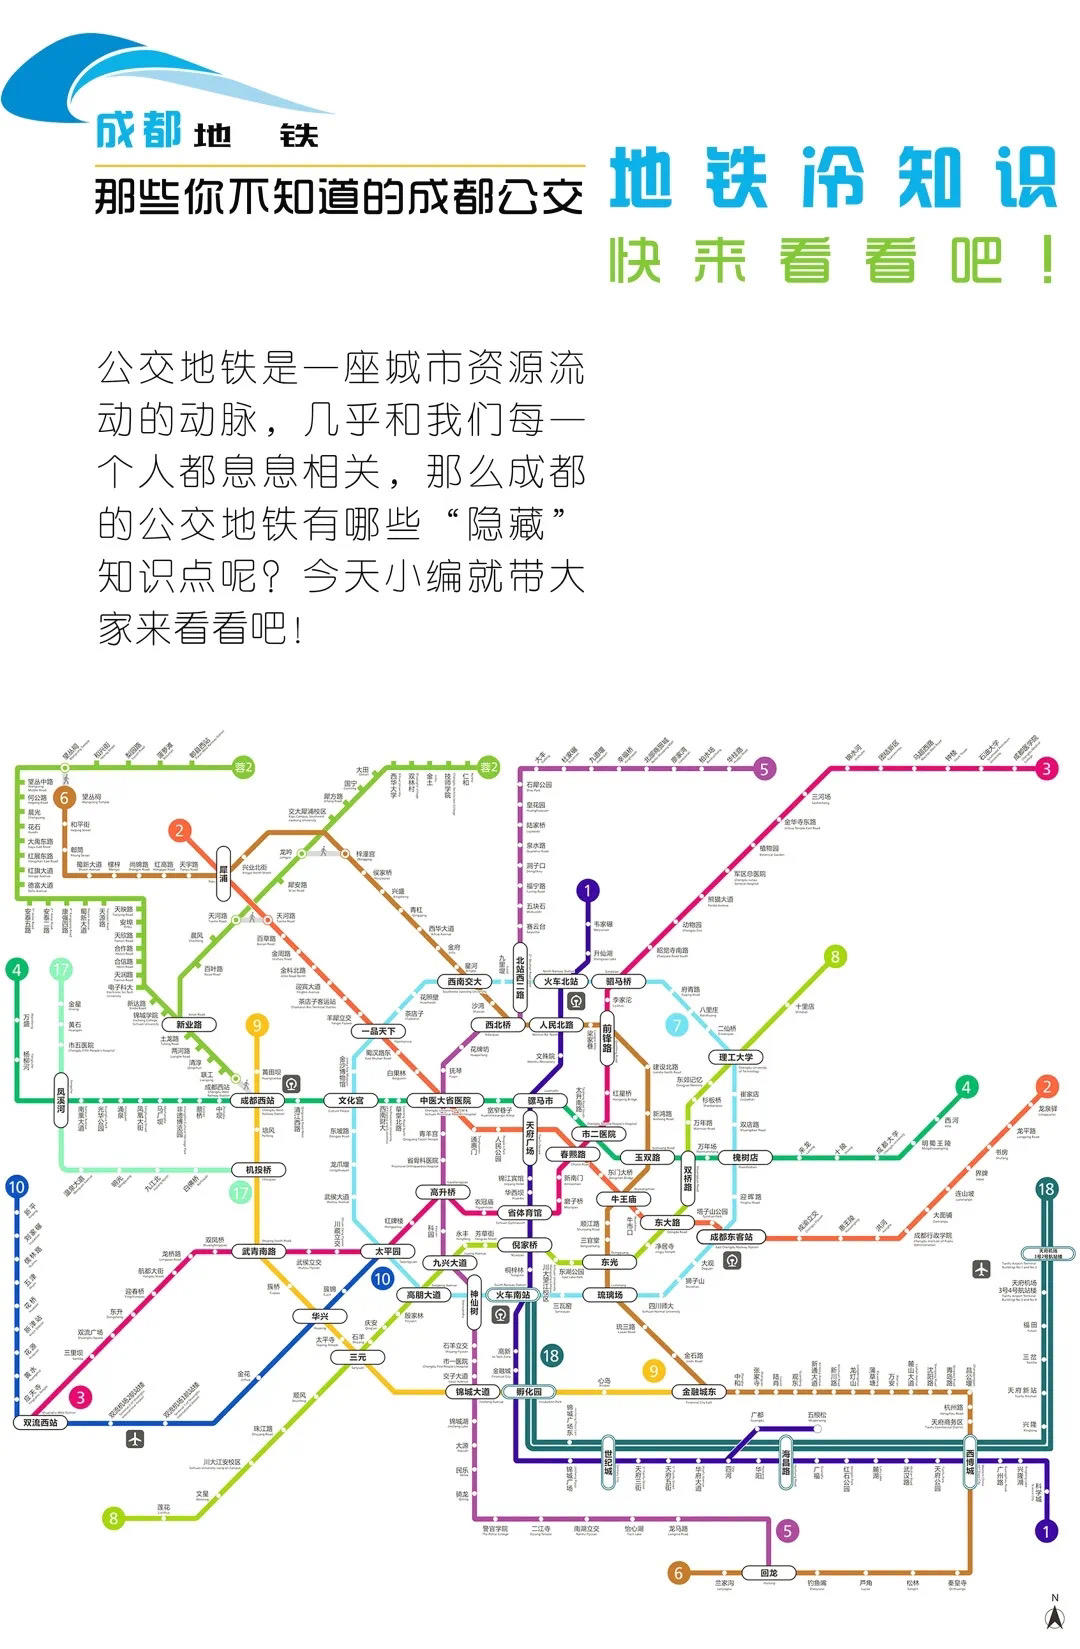 画了一些地铁公交线路图,给大家说说成都地铁公交的冷知识